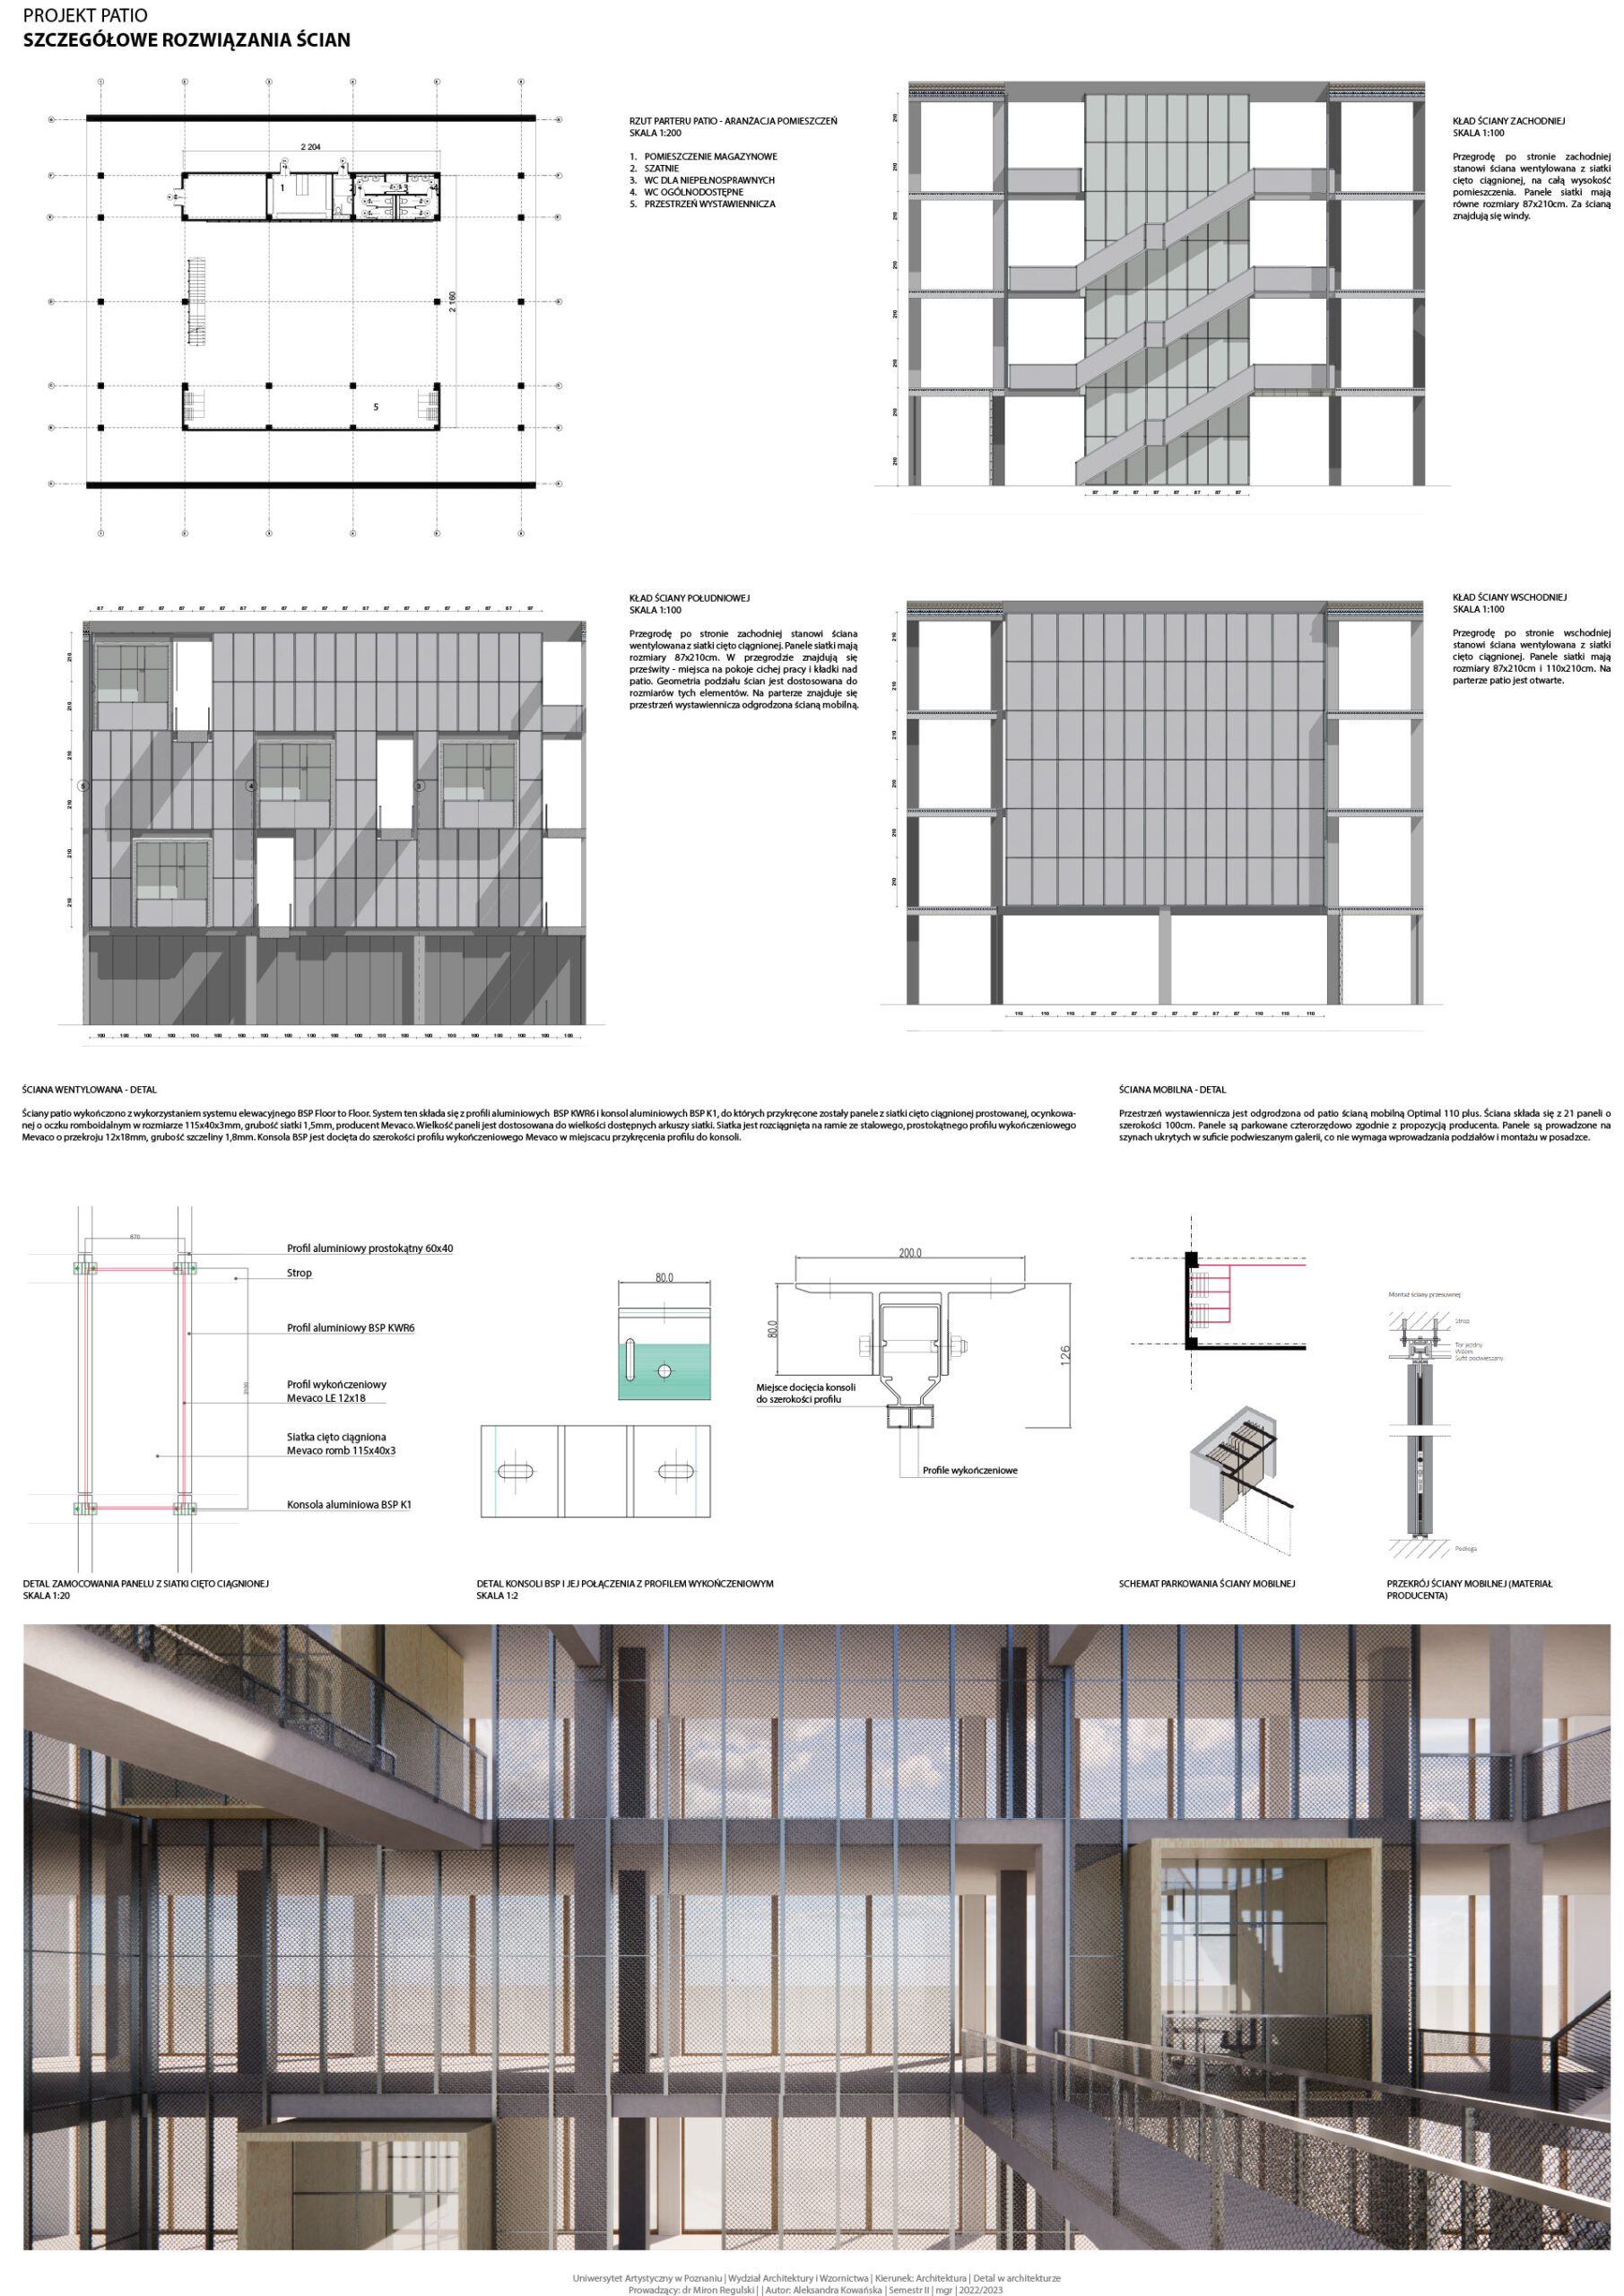 Dolna prawa część: wizualizacja projektowanego detalu w przestrzeni patio.Środkowa część:rysunki techniczne, schematy, opisy wyrobów budowlanych oraz rozwiązań technicznych.Górna część: przekroje budynku z ukazanymi podziałami okładzin ściennych.